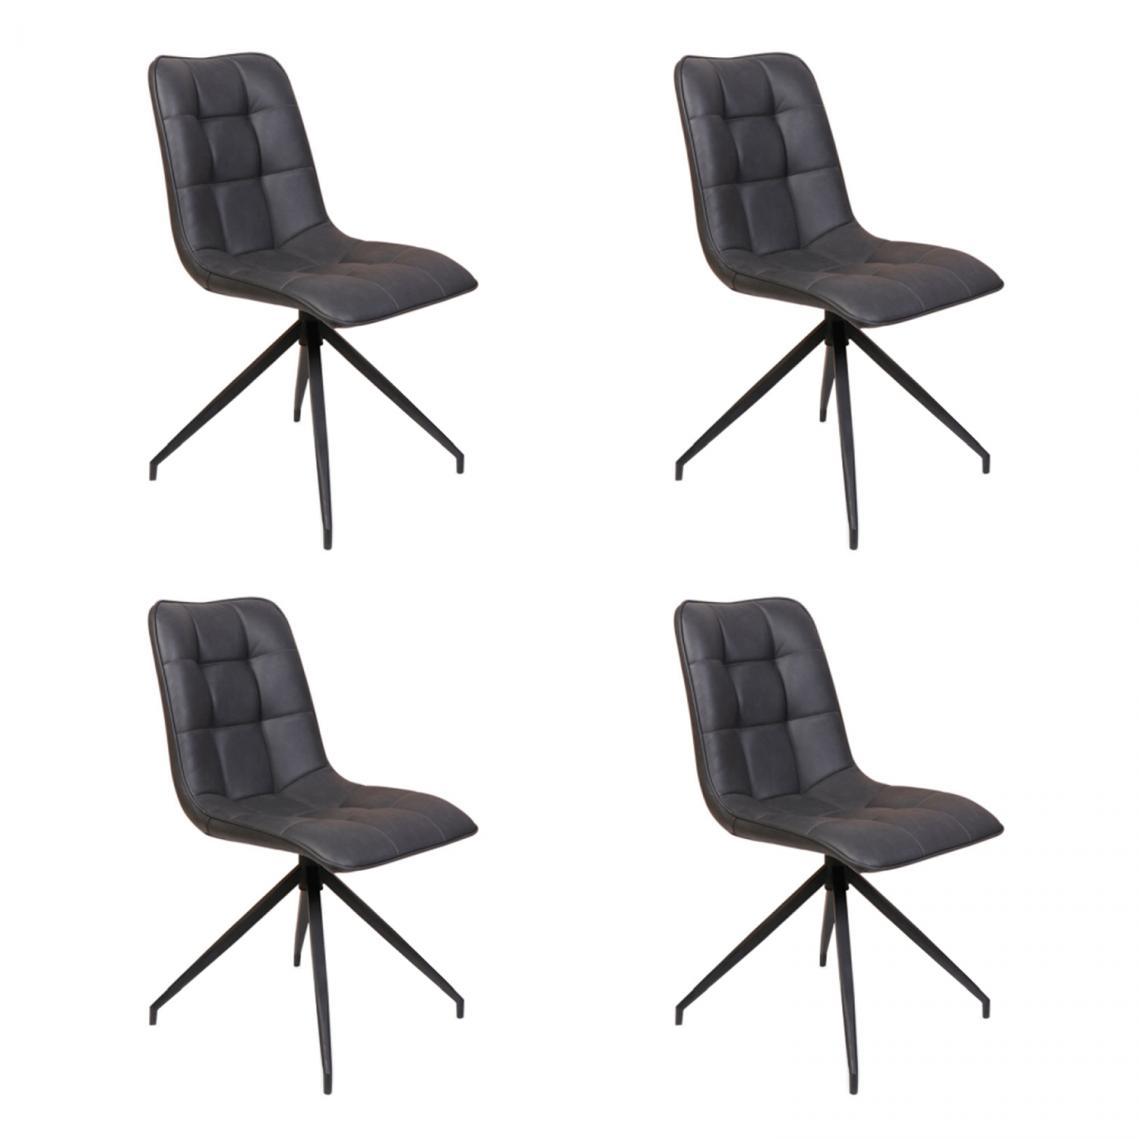 Hucoco - OLAG - Lot de 4 chaises design - Style scandinave - 89x47x44 cm - Similicuir - Coutures décoratives - Noir - Chaises